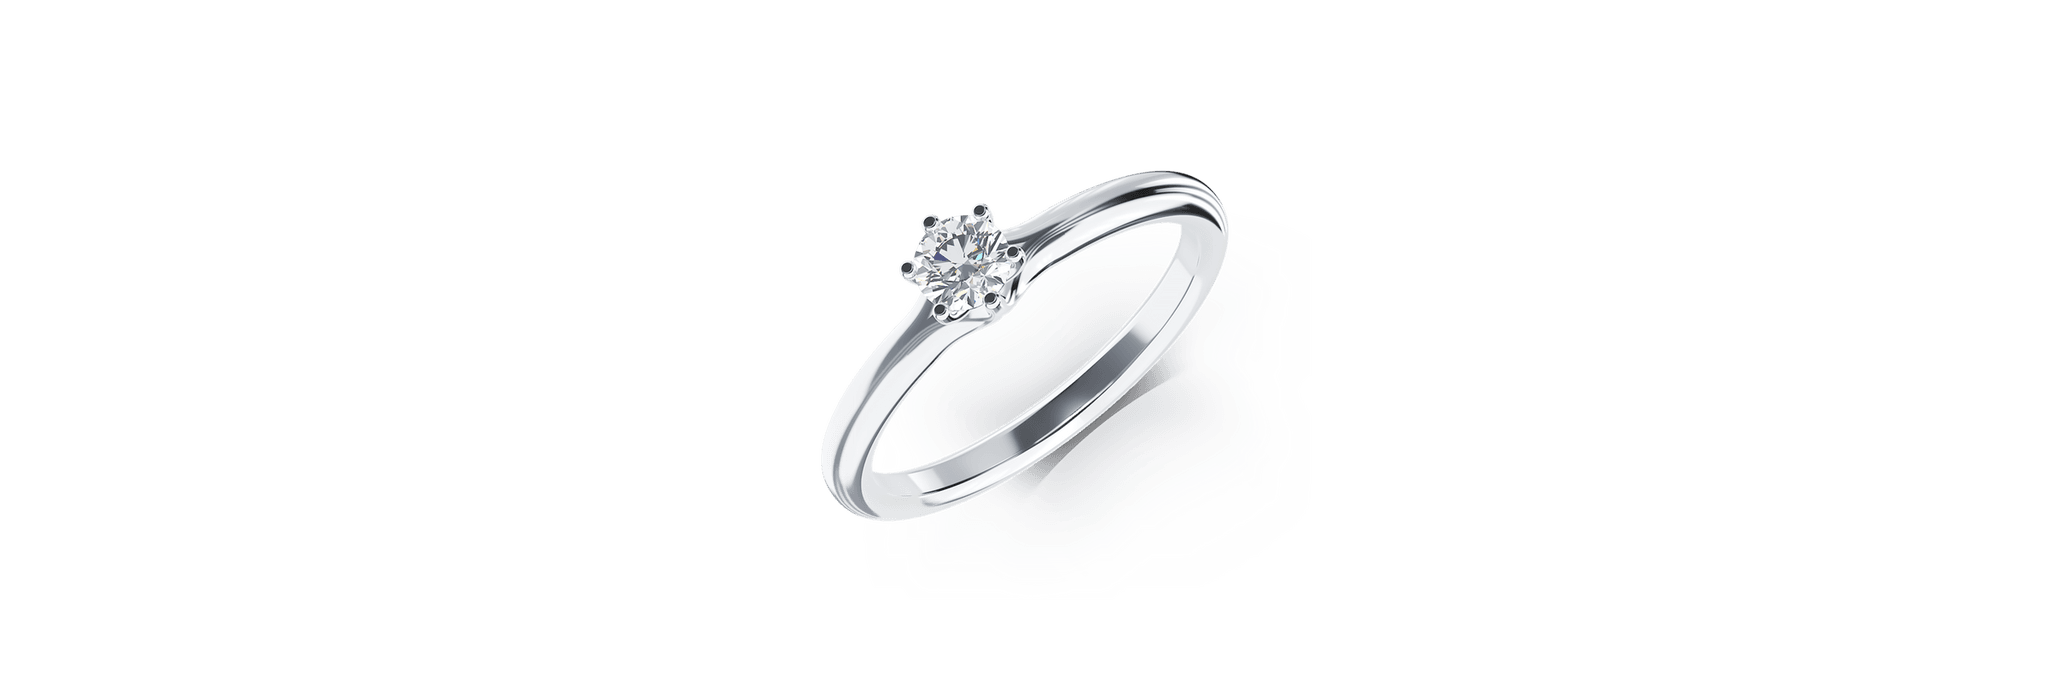 Inel de logodna din platina cu un diamant solitaire de 0.195ct